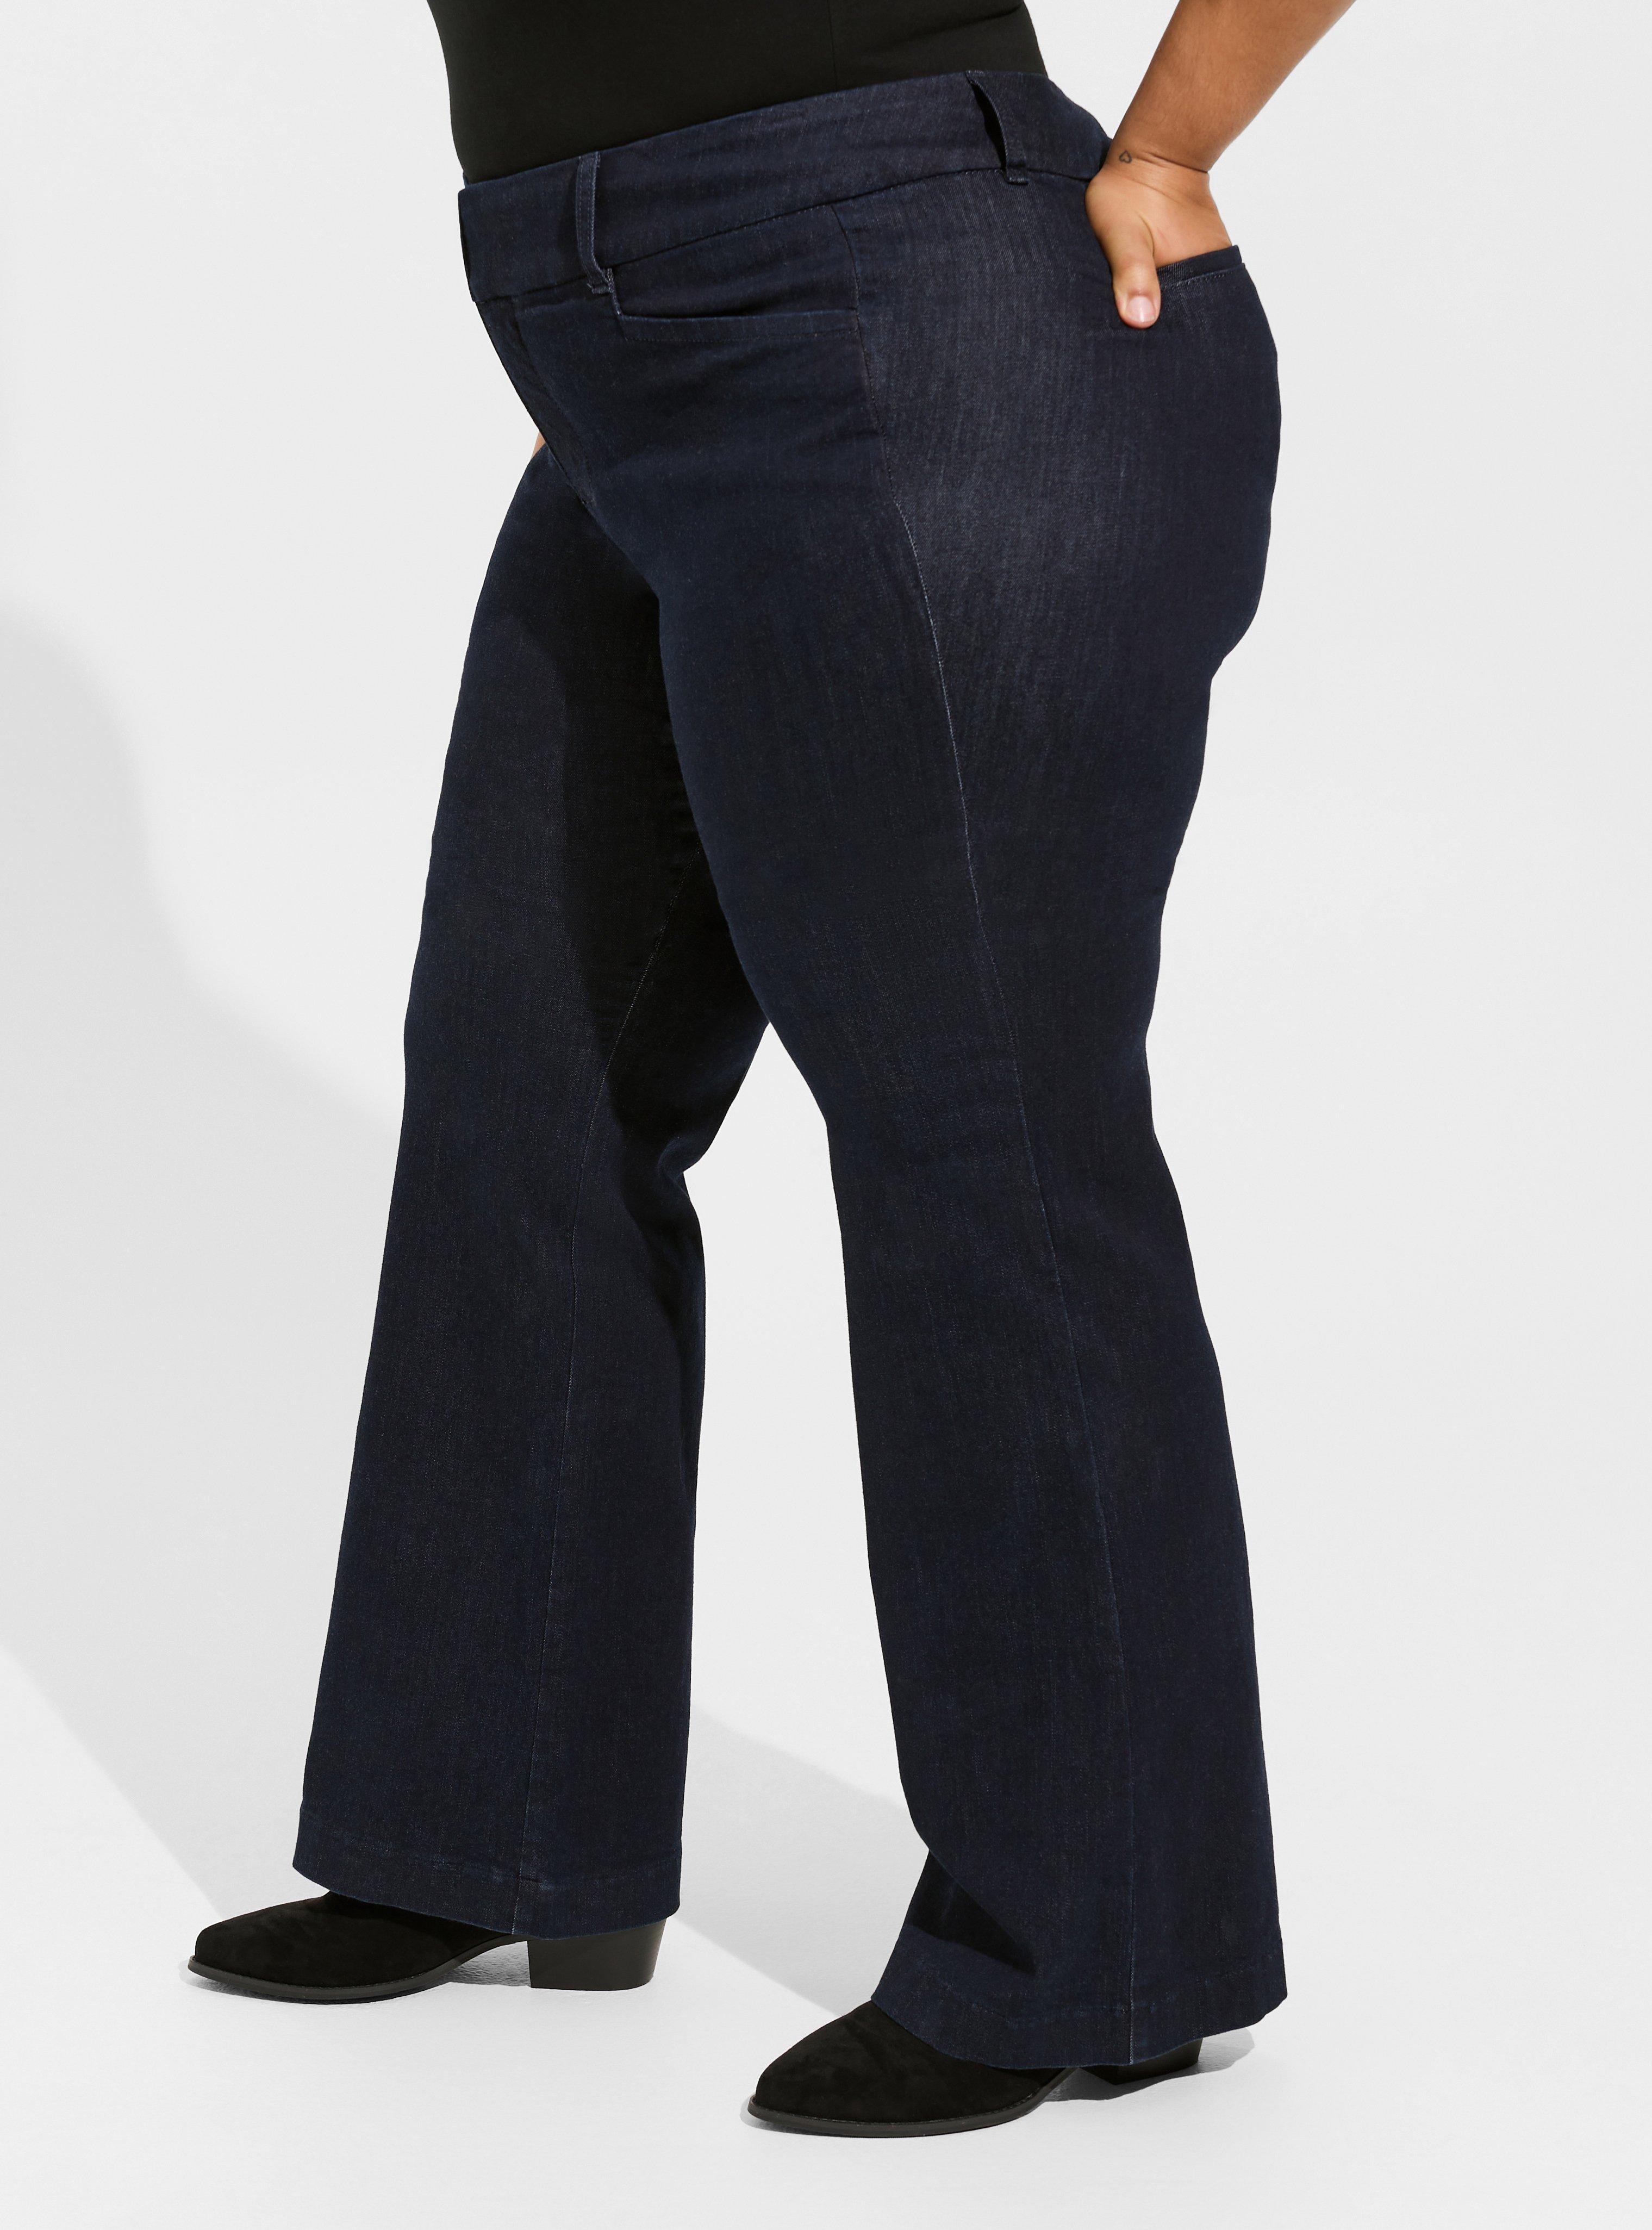 Plus Size - Comfort Flex Taper Super Soft High Rise Trouser Jean - Torrid